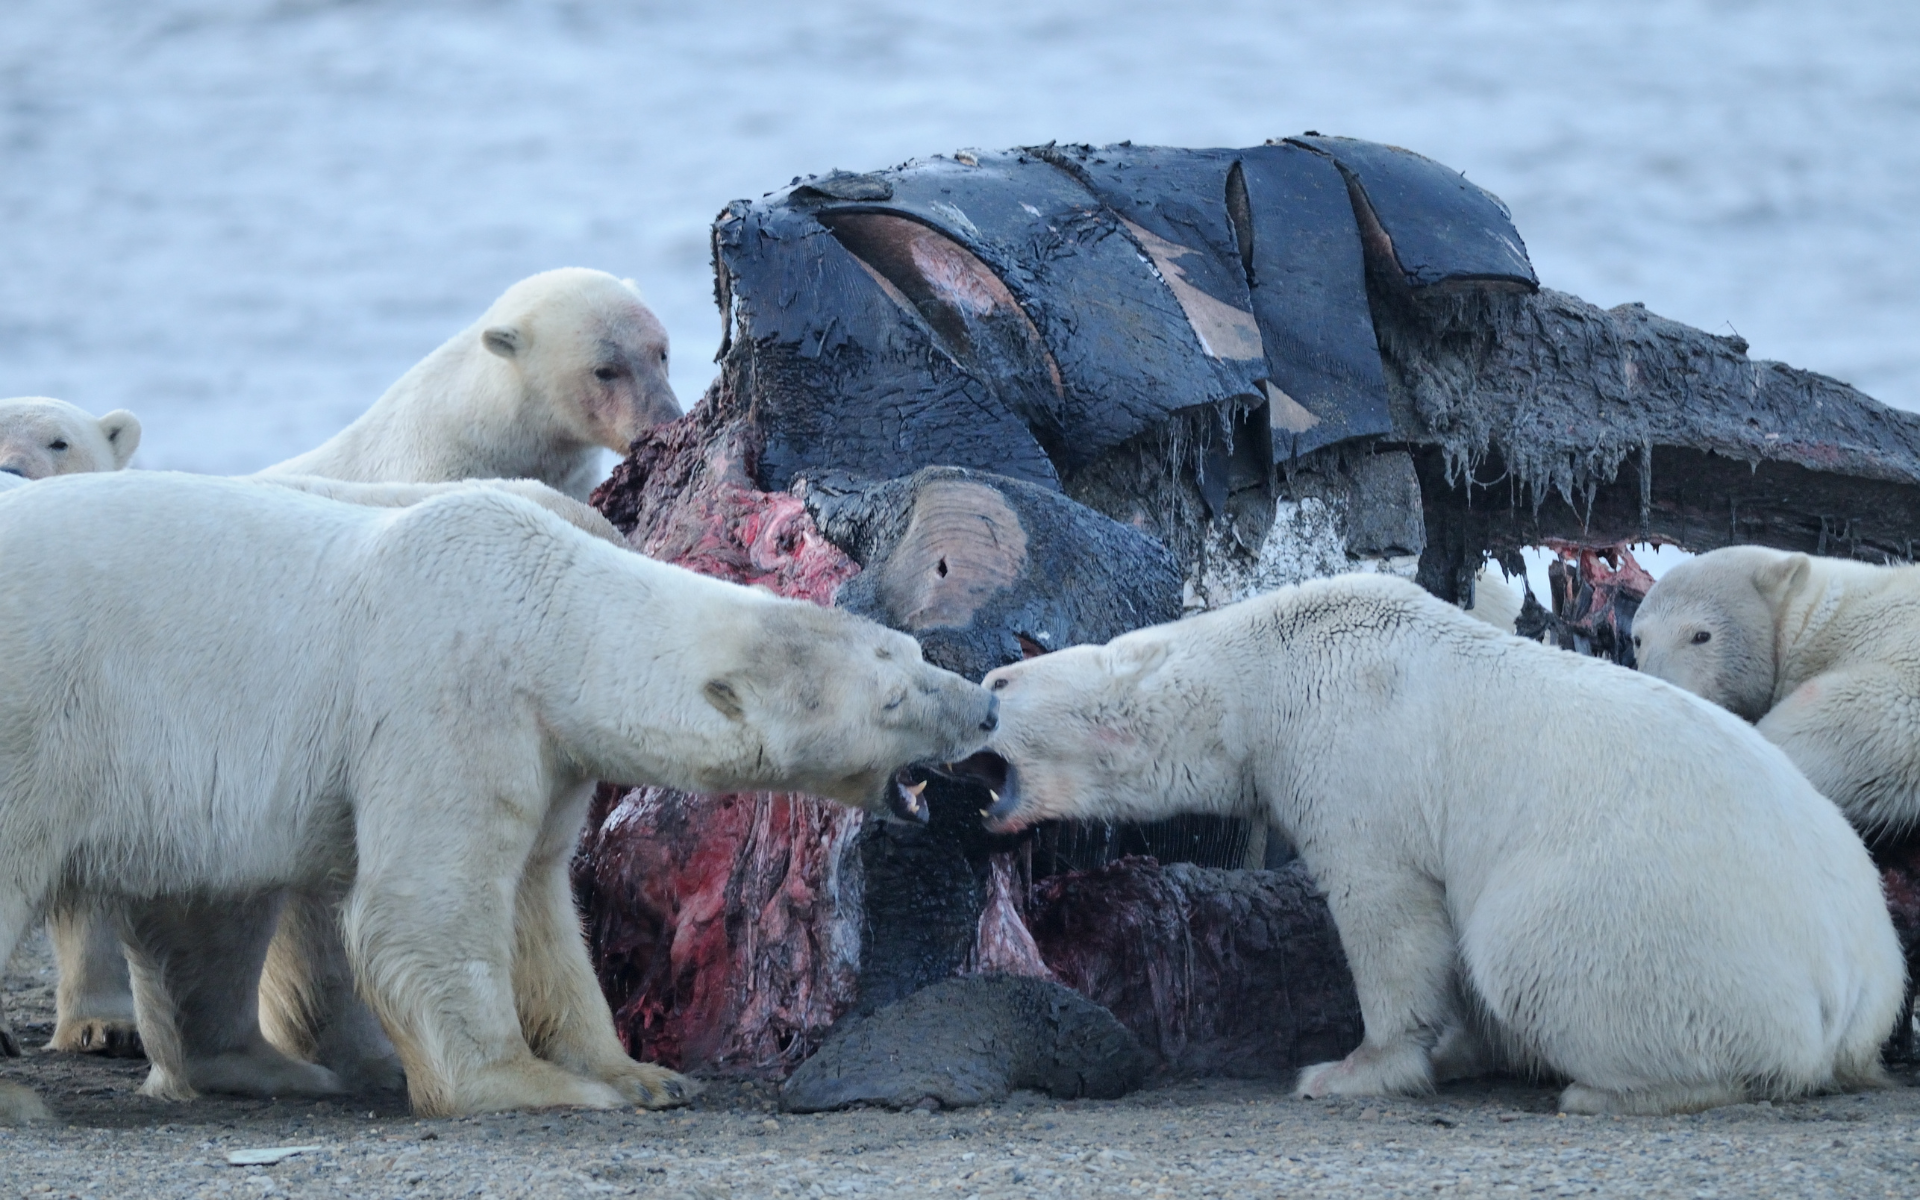 un grupo de osos polares comiendo del cadaver de una ballena.